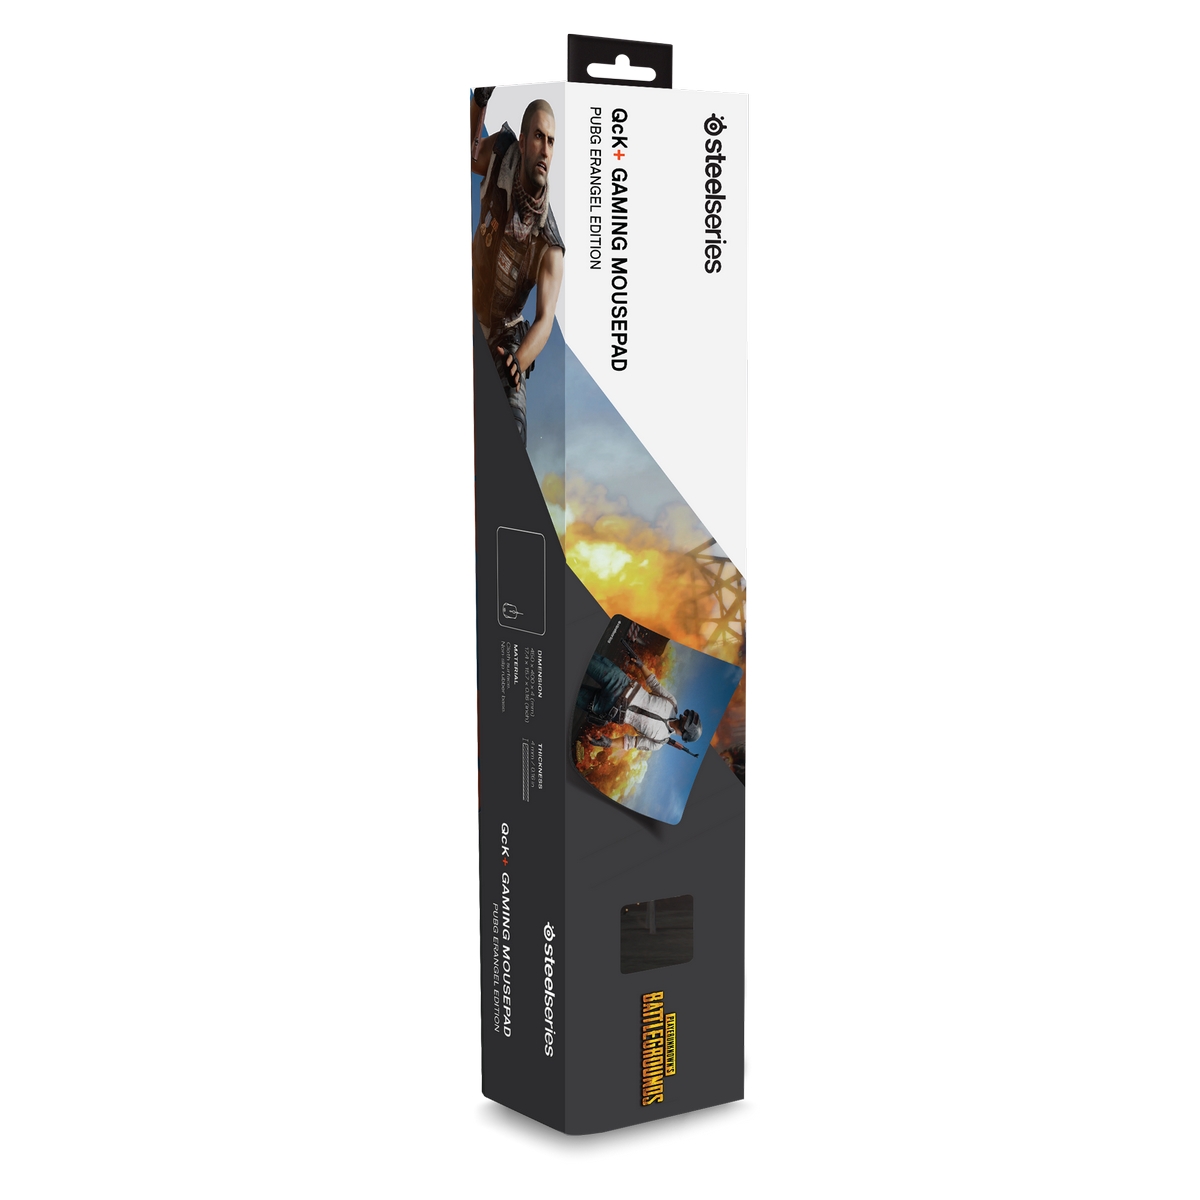 SteelSeries - SteelSeries Qck+ PUBG Erangel Edition Large Gaming Surface (63807)